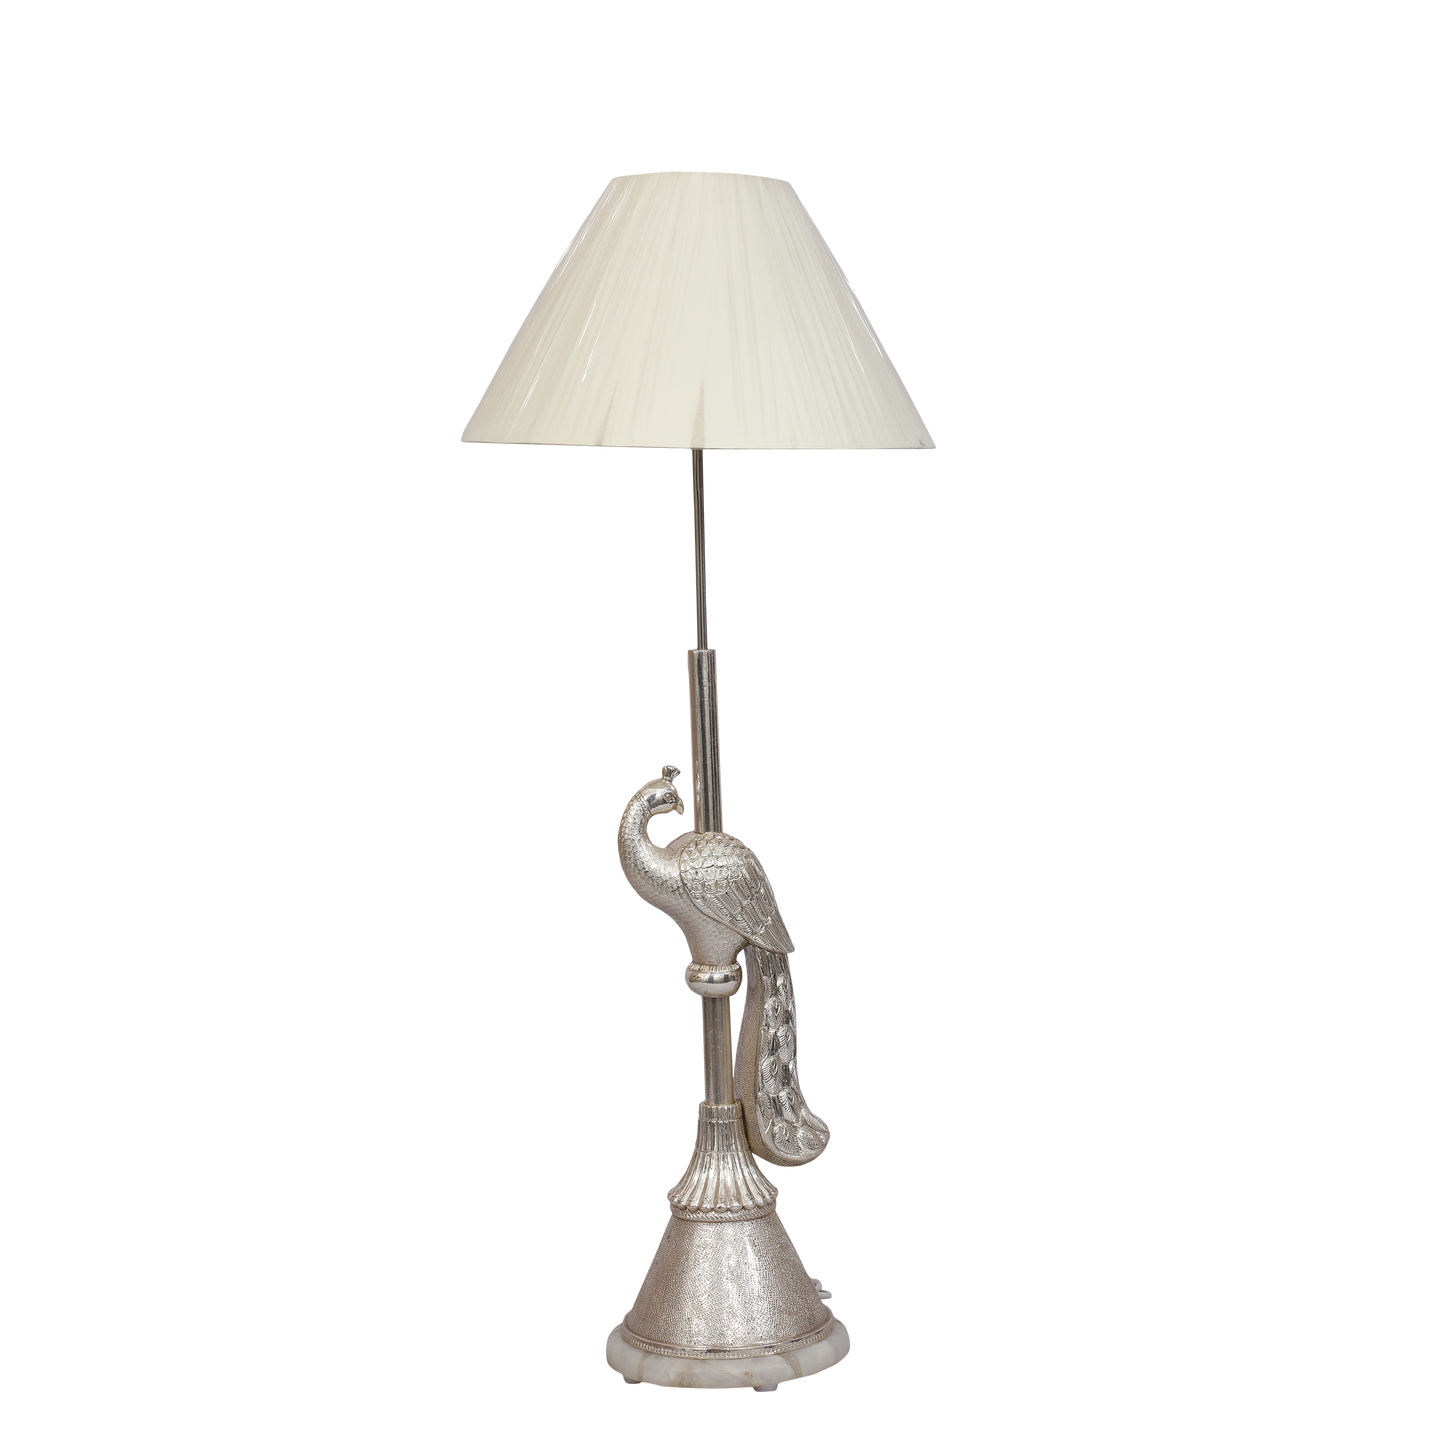 Peacock Lamp